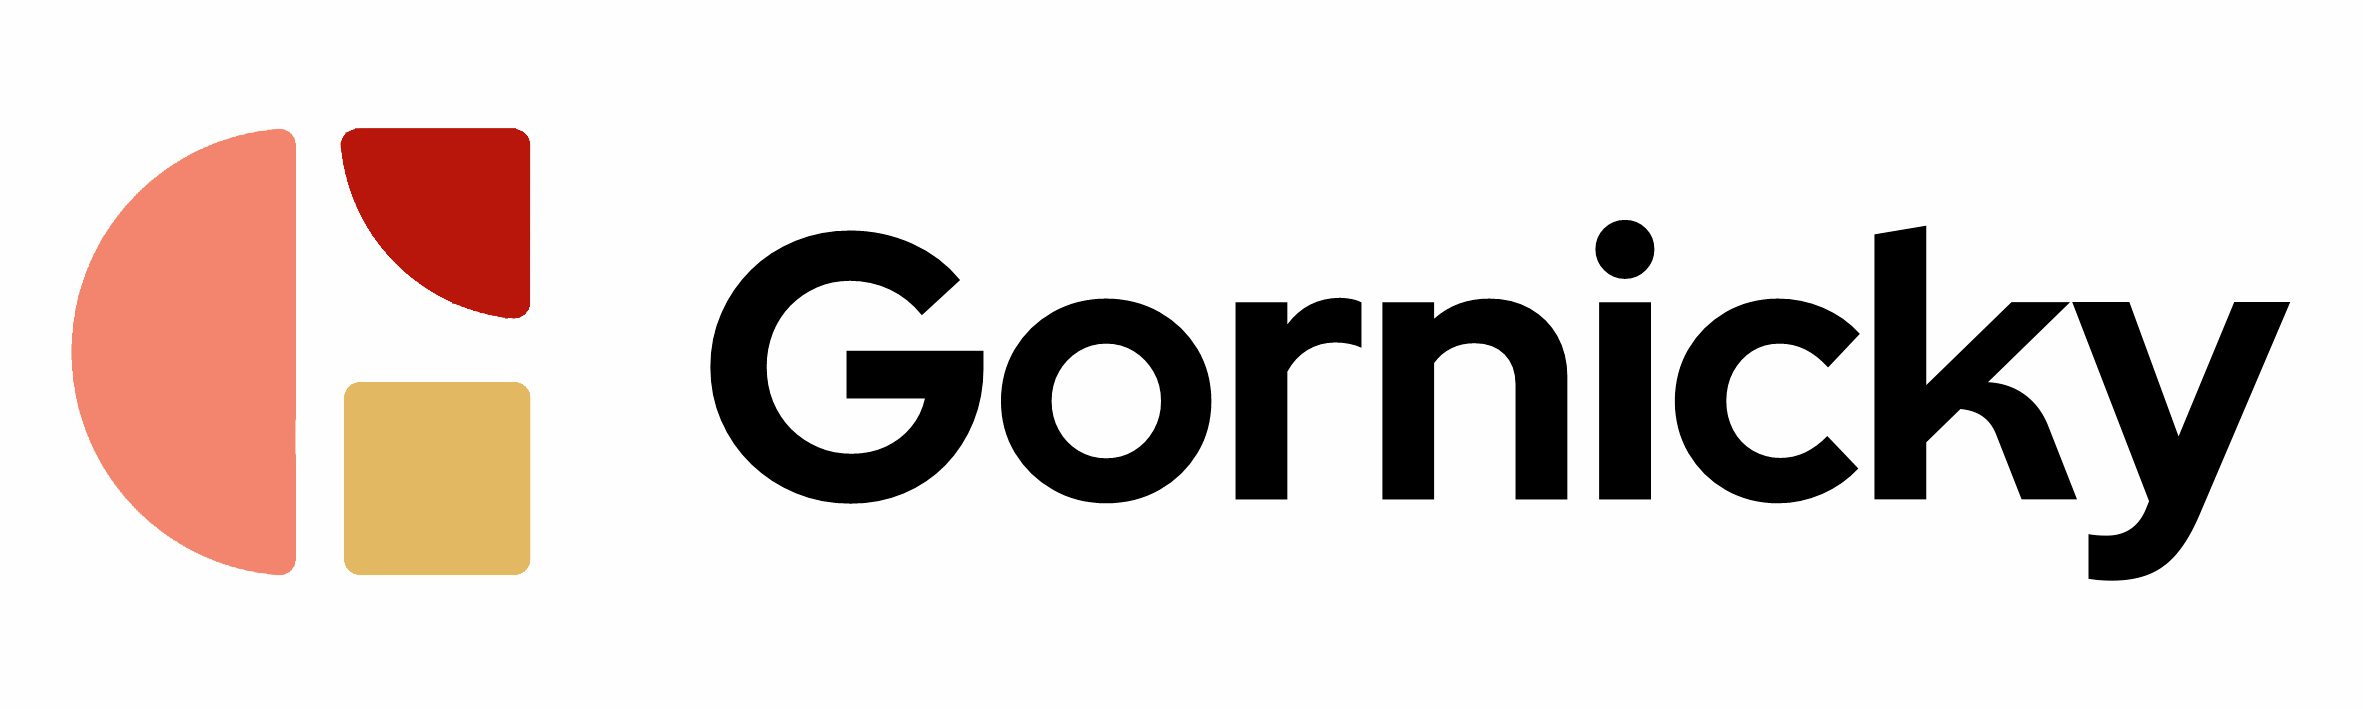 Gornicky, s.r.o. - dovozce zahraničních uzenin a sýrů